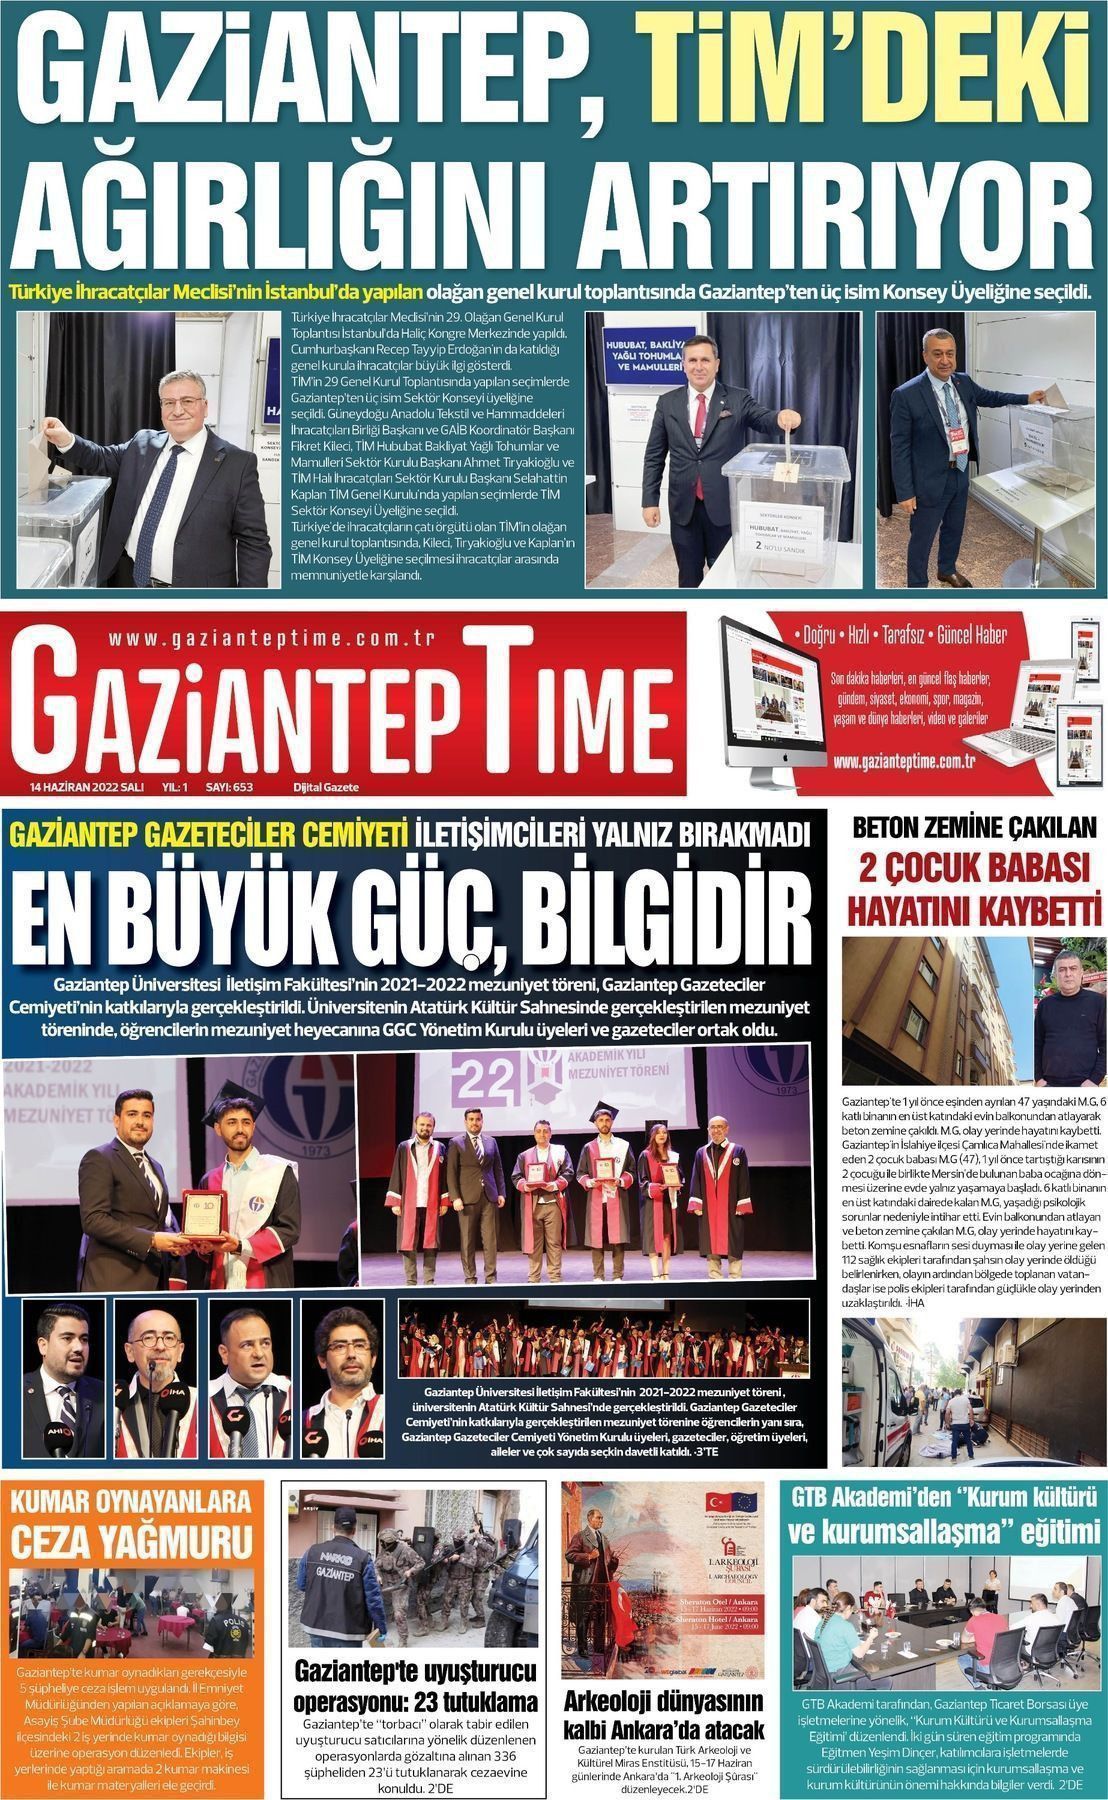 Haziran Tarihli Gaziantep Time Gazete Man Etleri